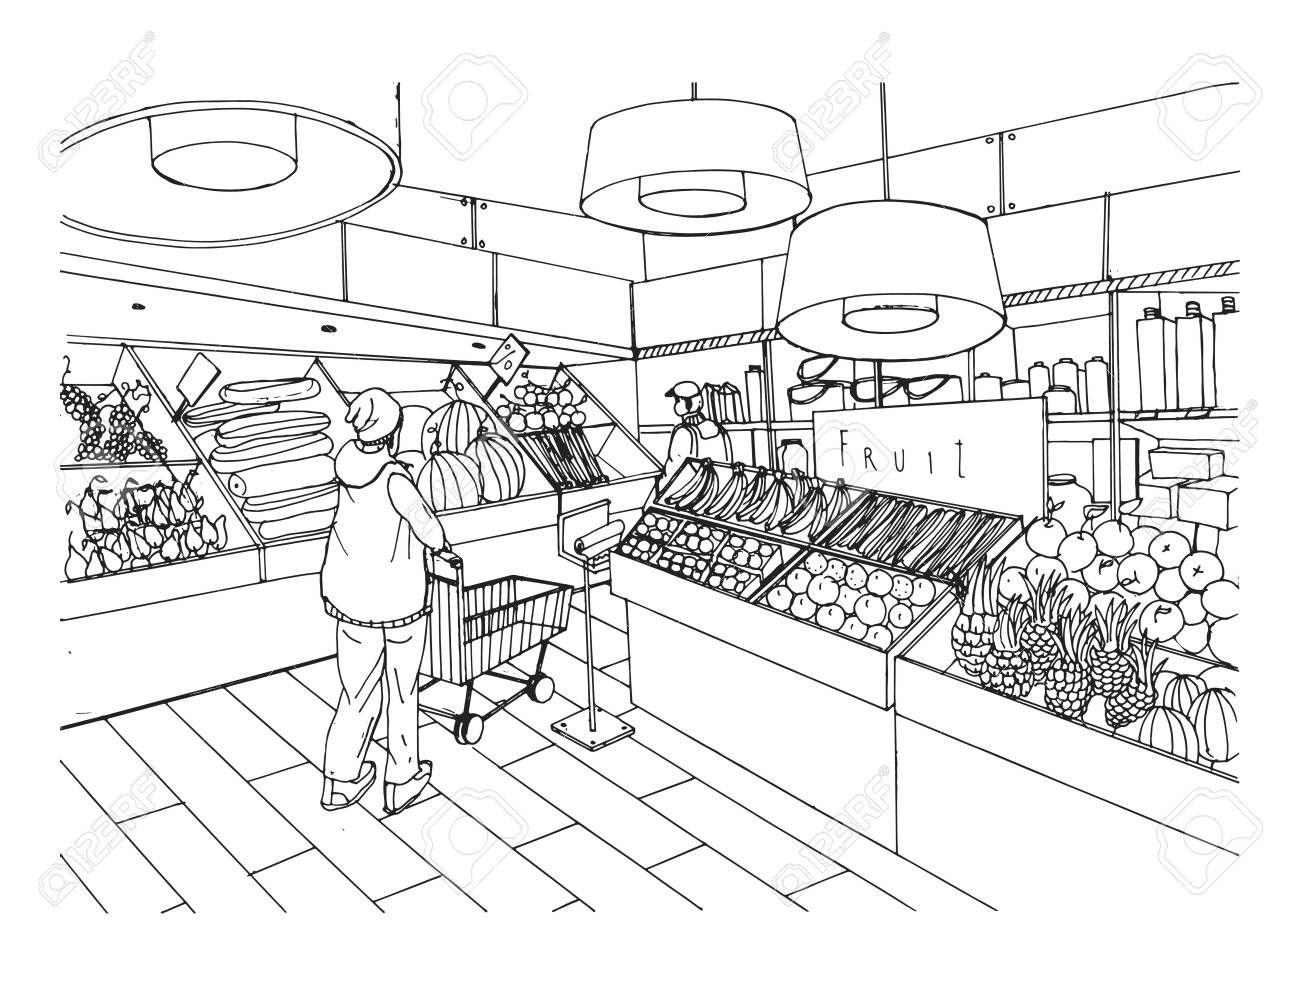 Supermarket interior in hand drawn style